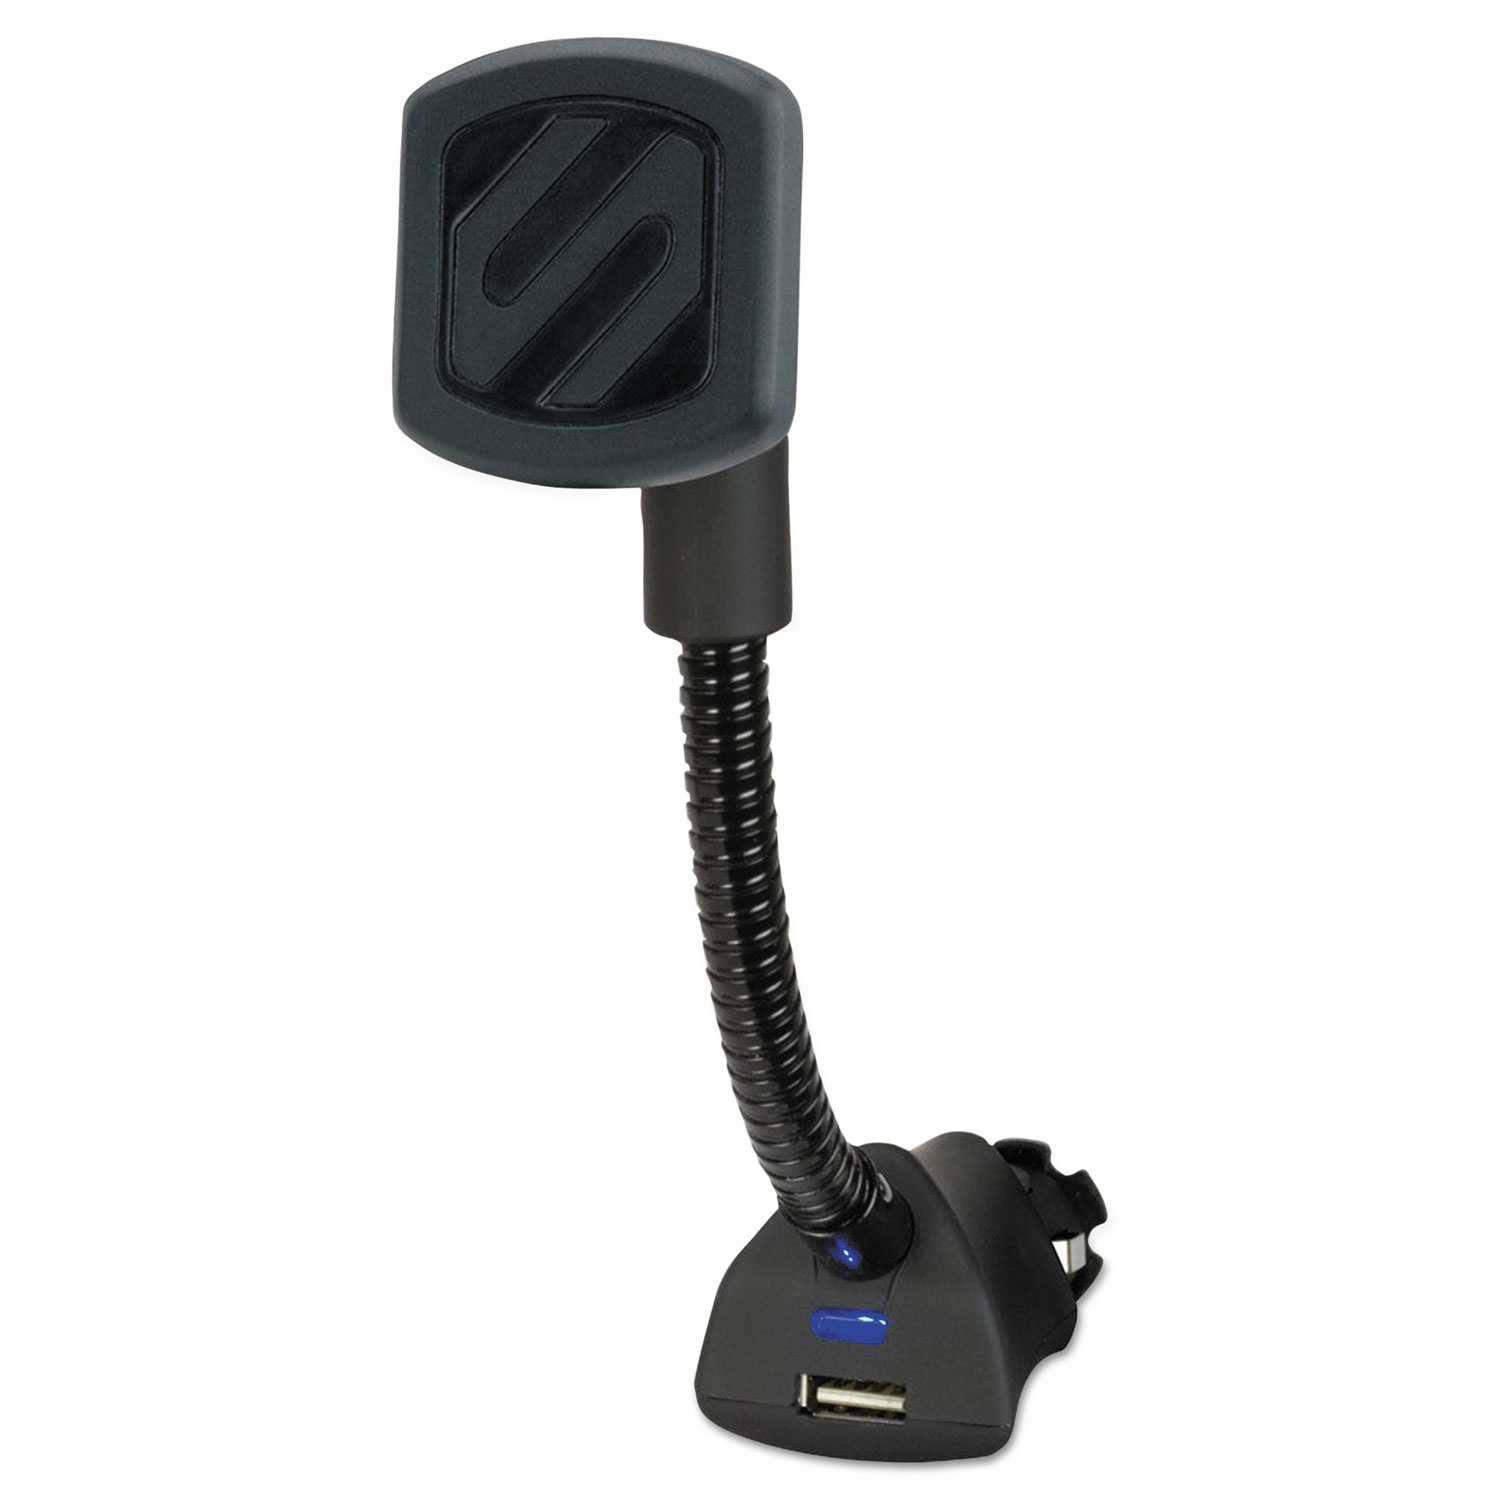  Scosche MAG12V Magnetic Power Socket Mount with USB Charging Port for Mobile Devices, Black (SOSMAG12V) 